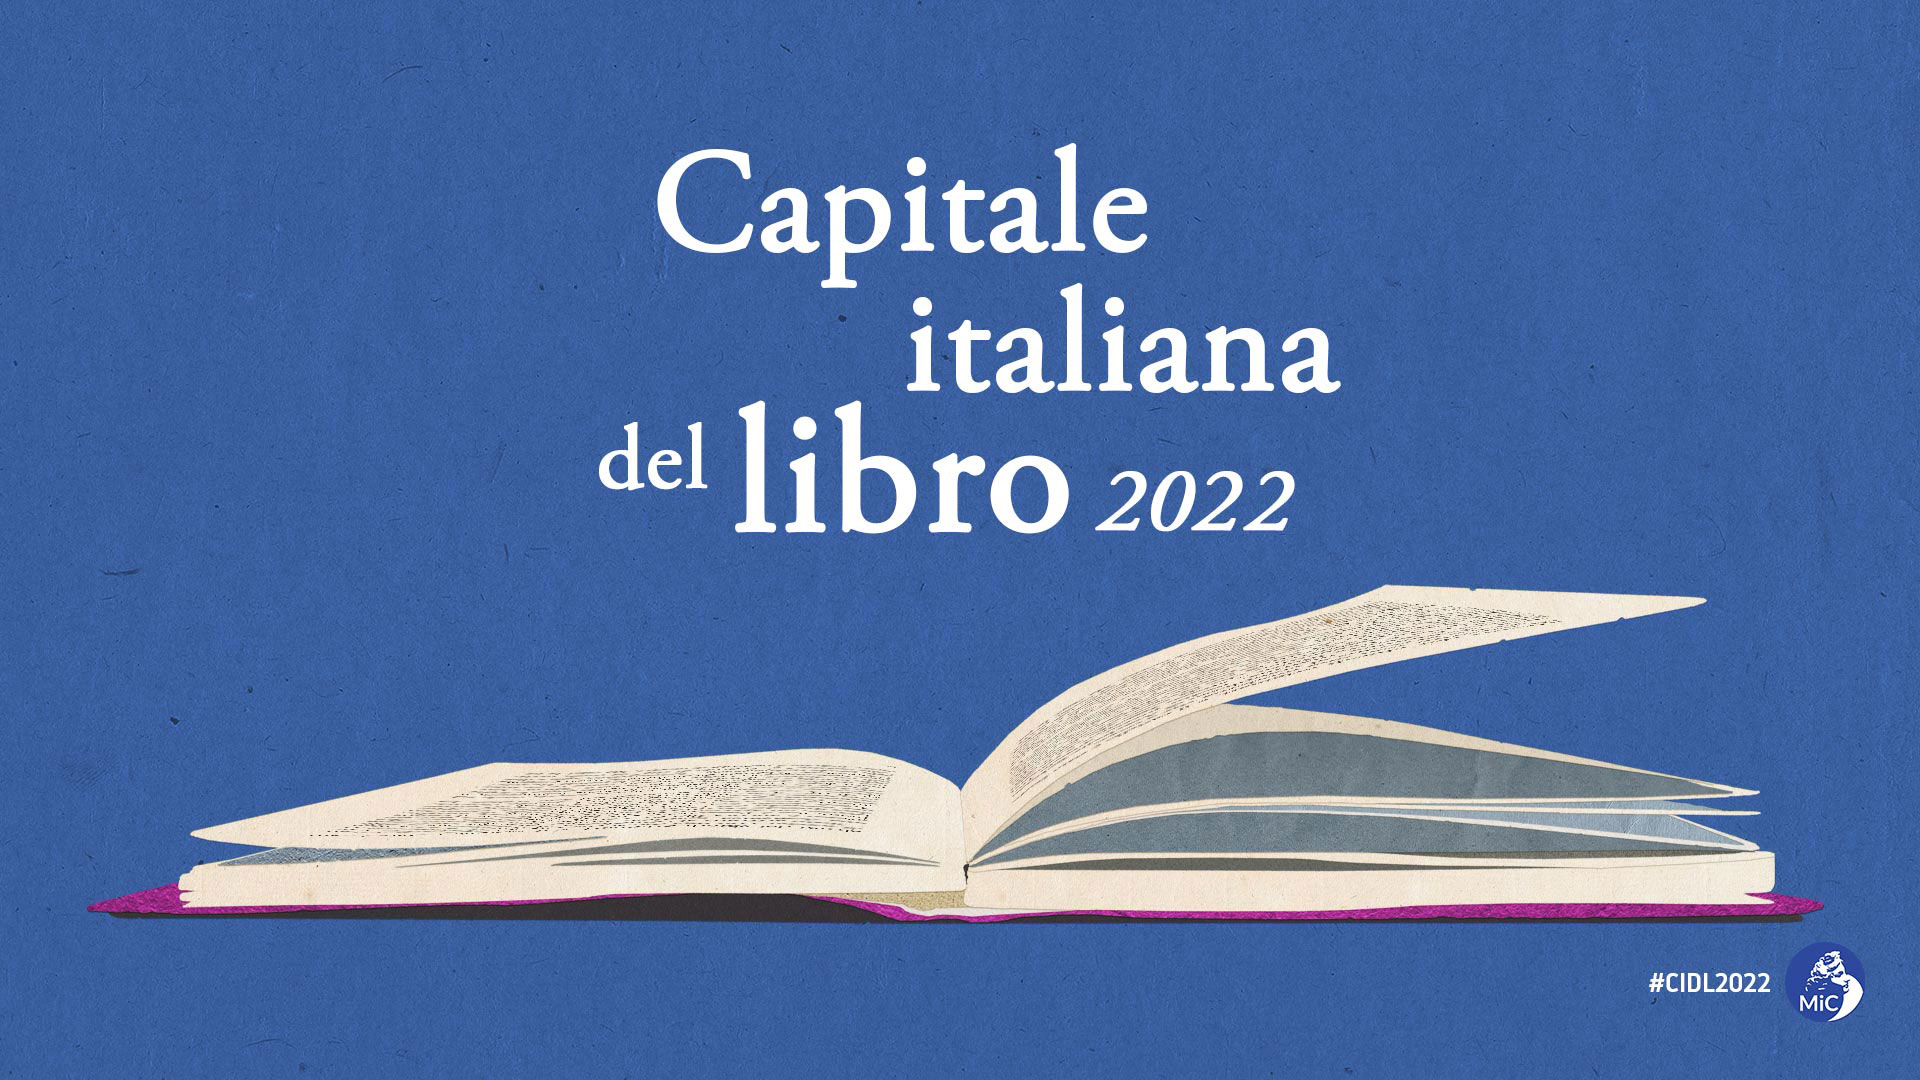 Capitale italiana del libro, il presidente Bardi: “Aliano rappresenta i valori del Mezzogiorno”